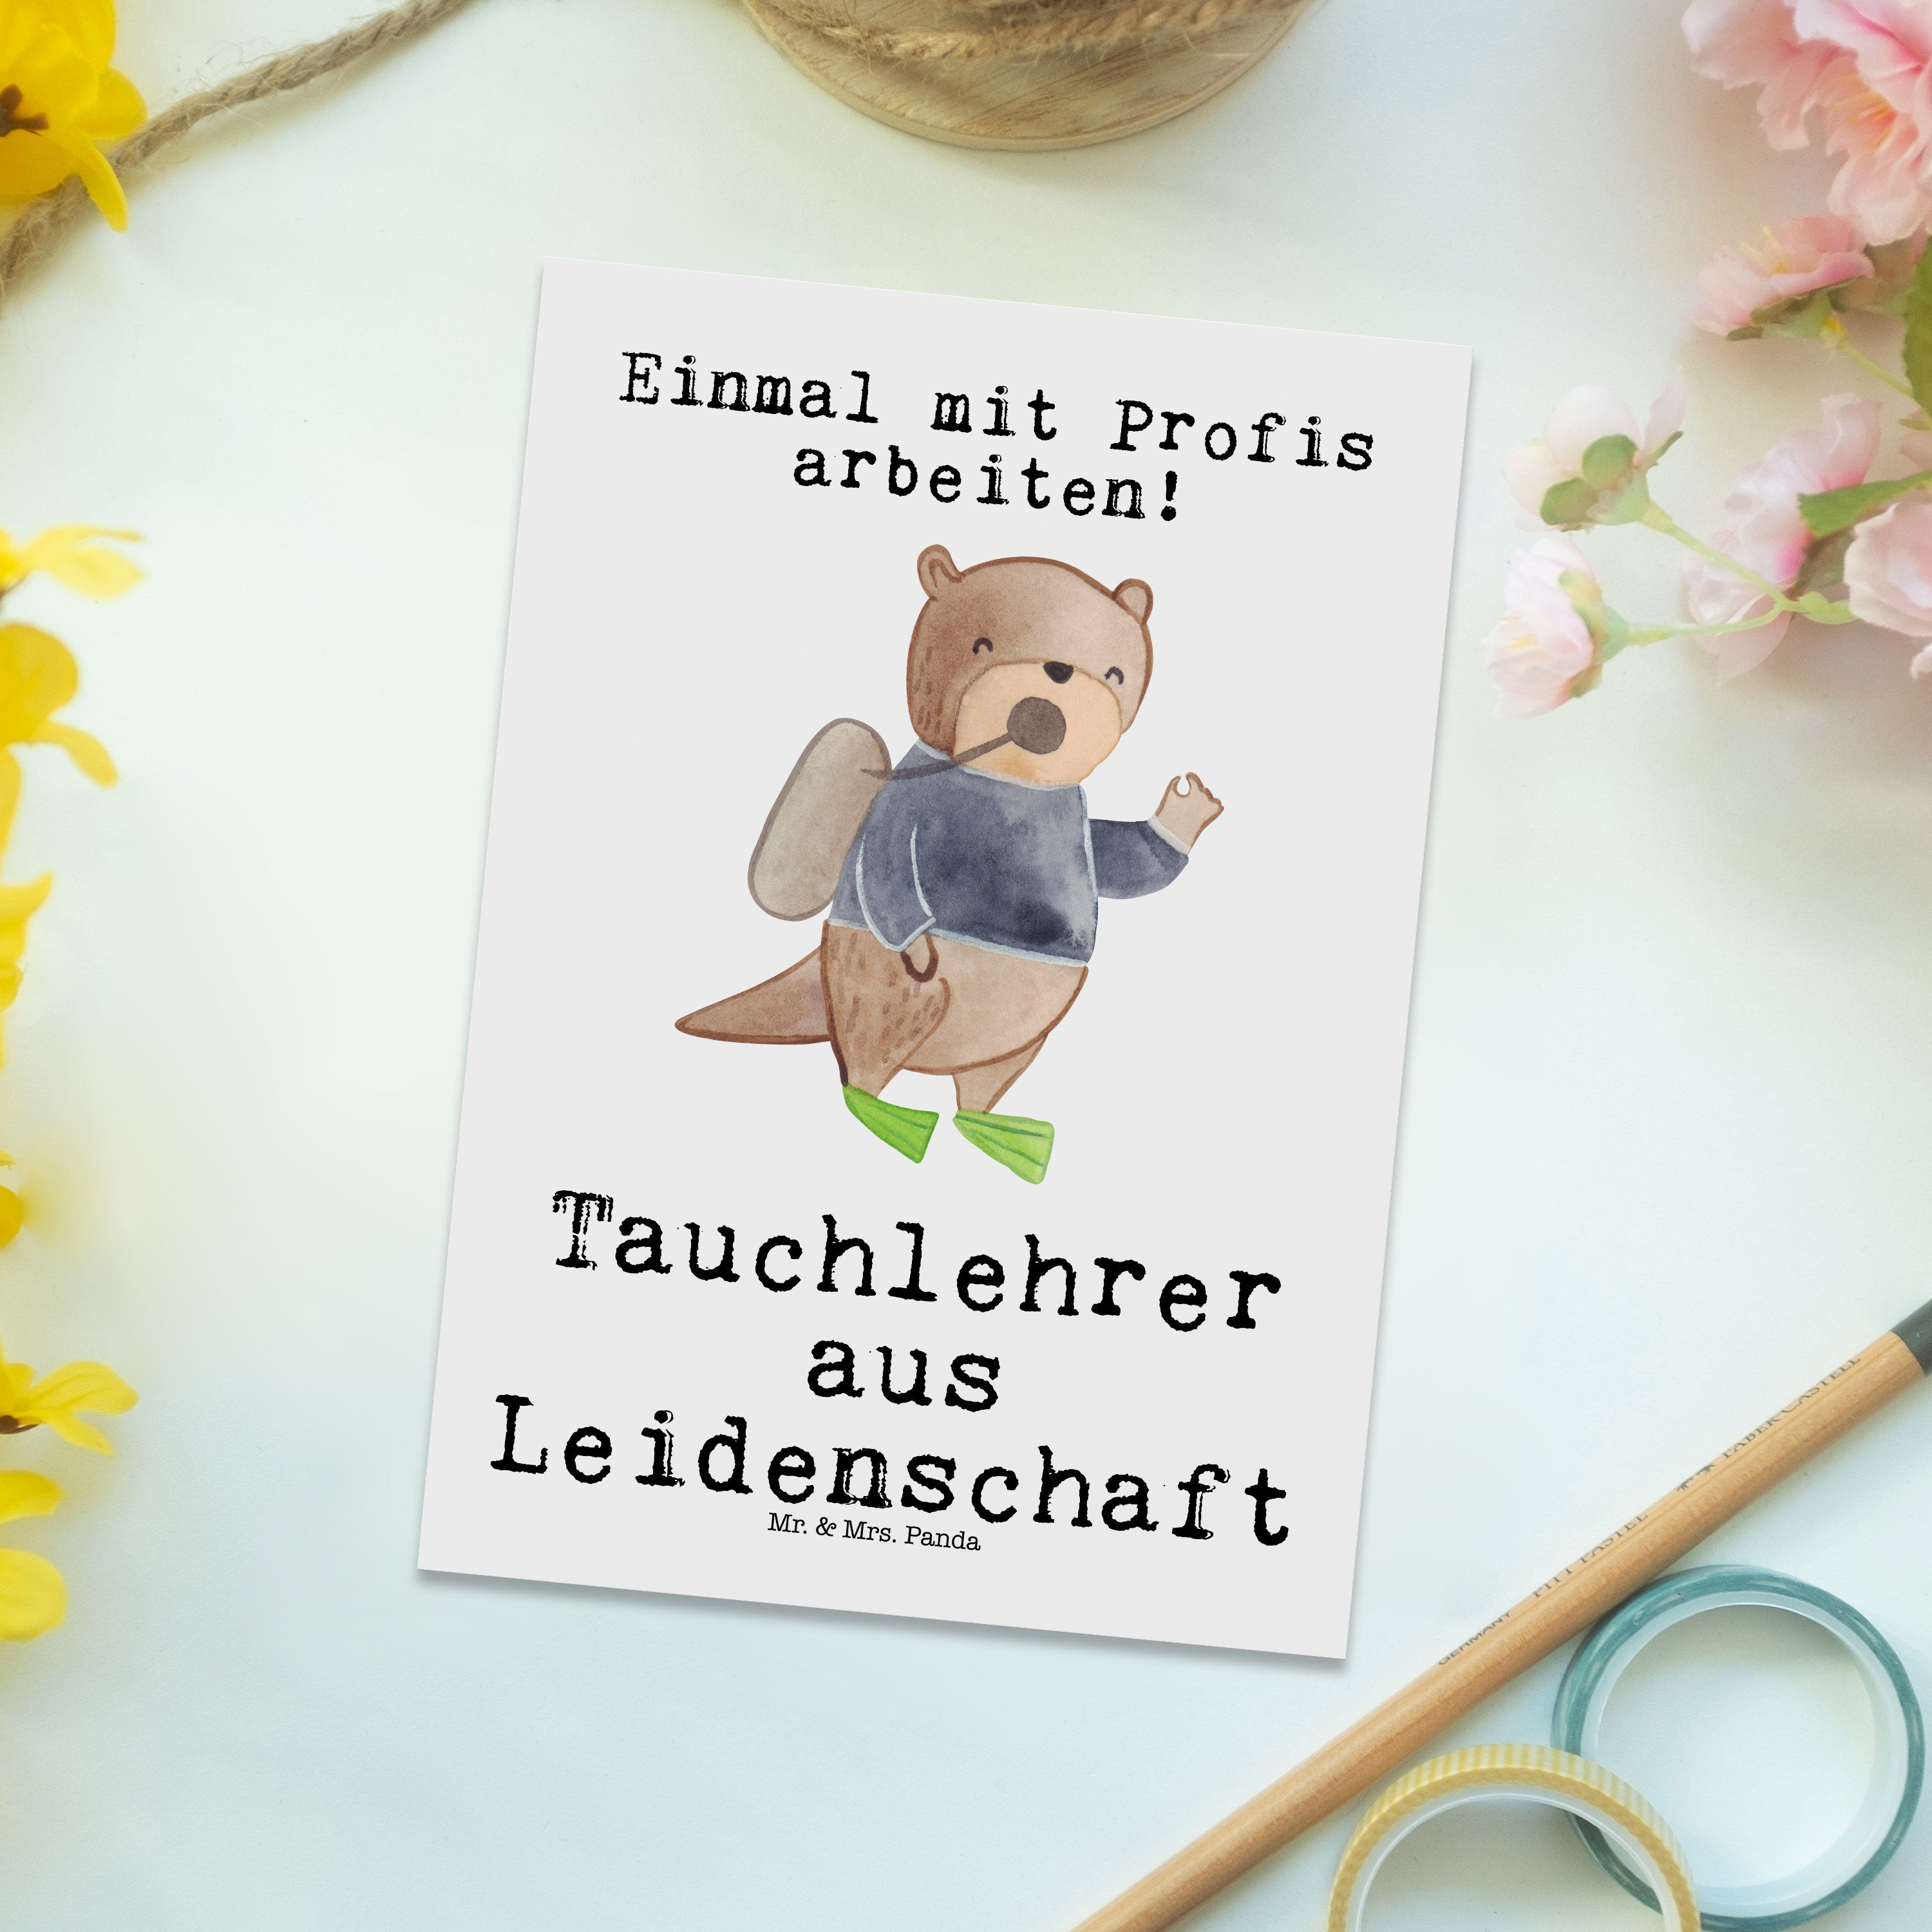 Mr. Panda Arbeitskollege Geschenk, Weiß - Postkarte - aus & Tauchlehrer Karte, Leidenschaft Mrs.